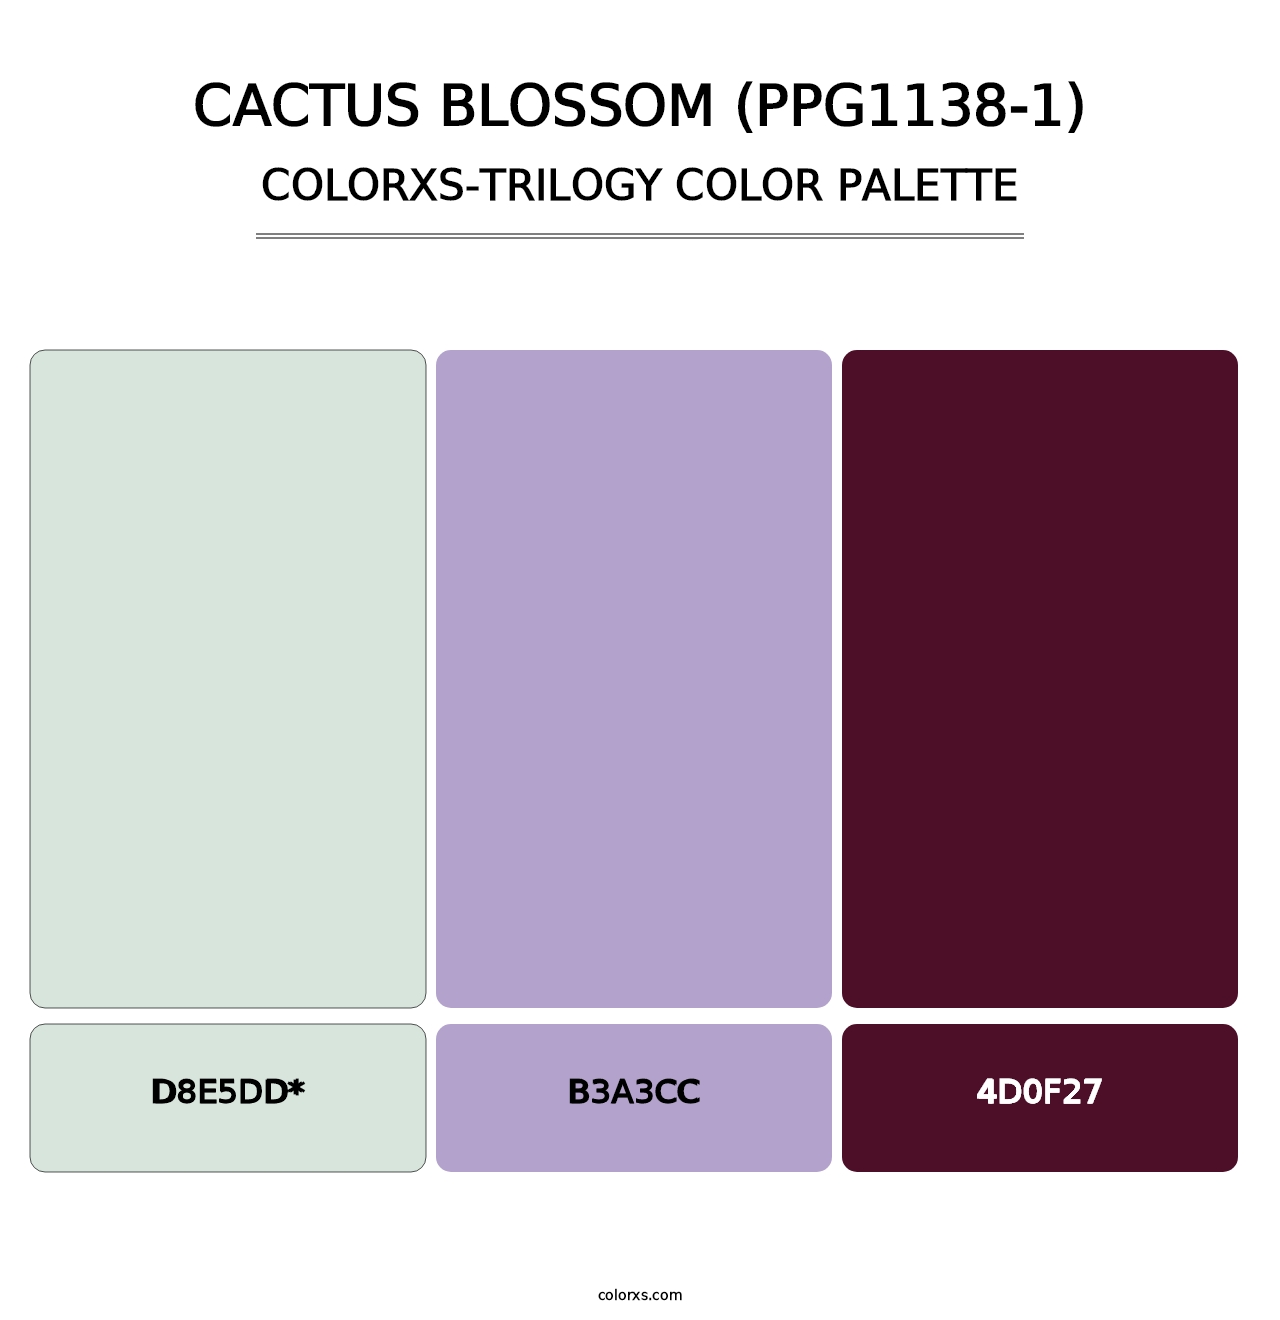 Cactus Blossom (PPG1138-1) - Colorxs Trilogy Palette